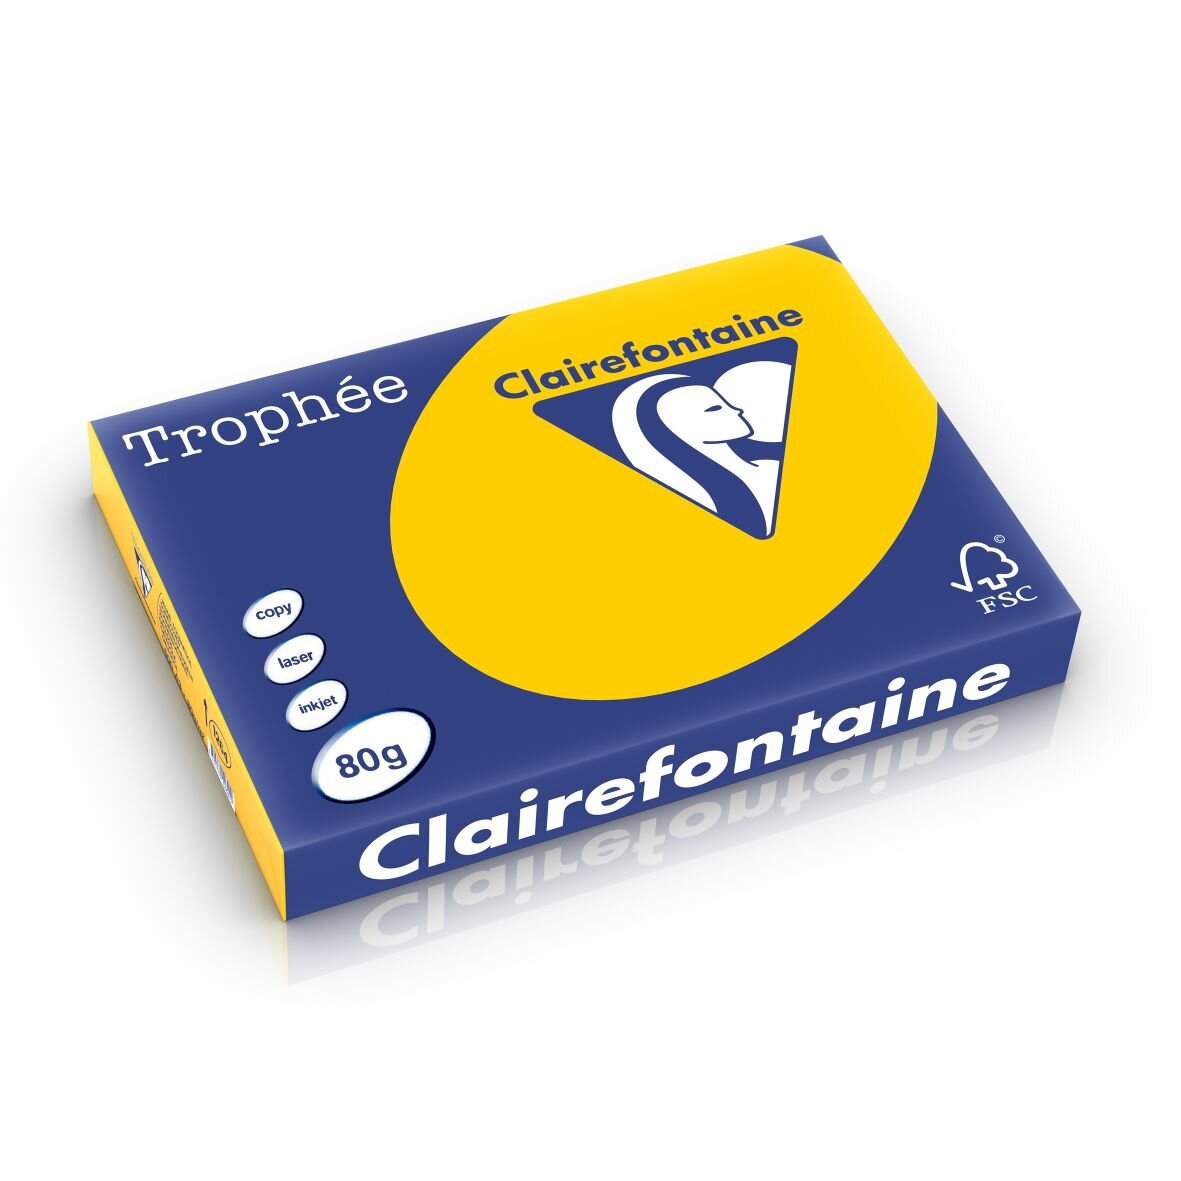 Clairefontaine Trophée  gekleurd kantoorpapier